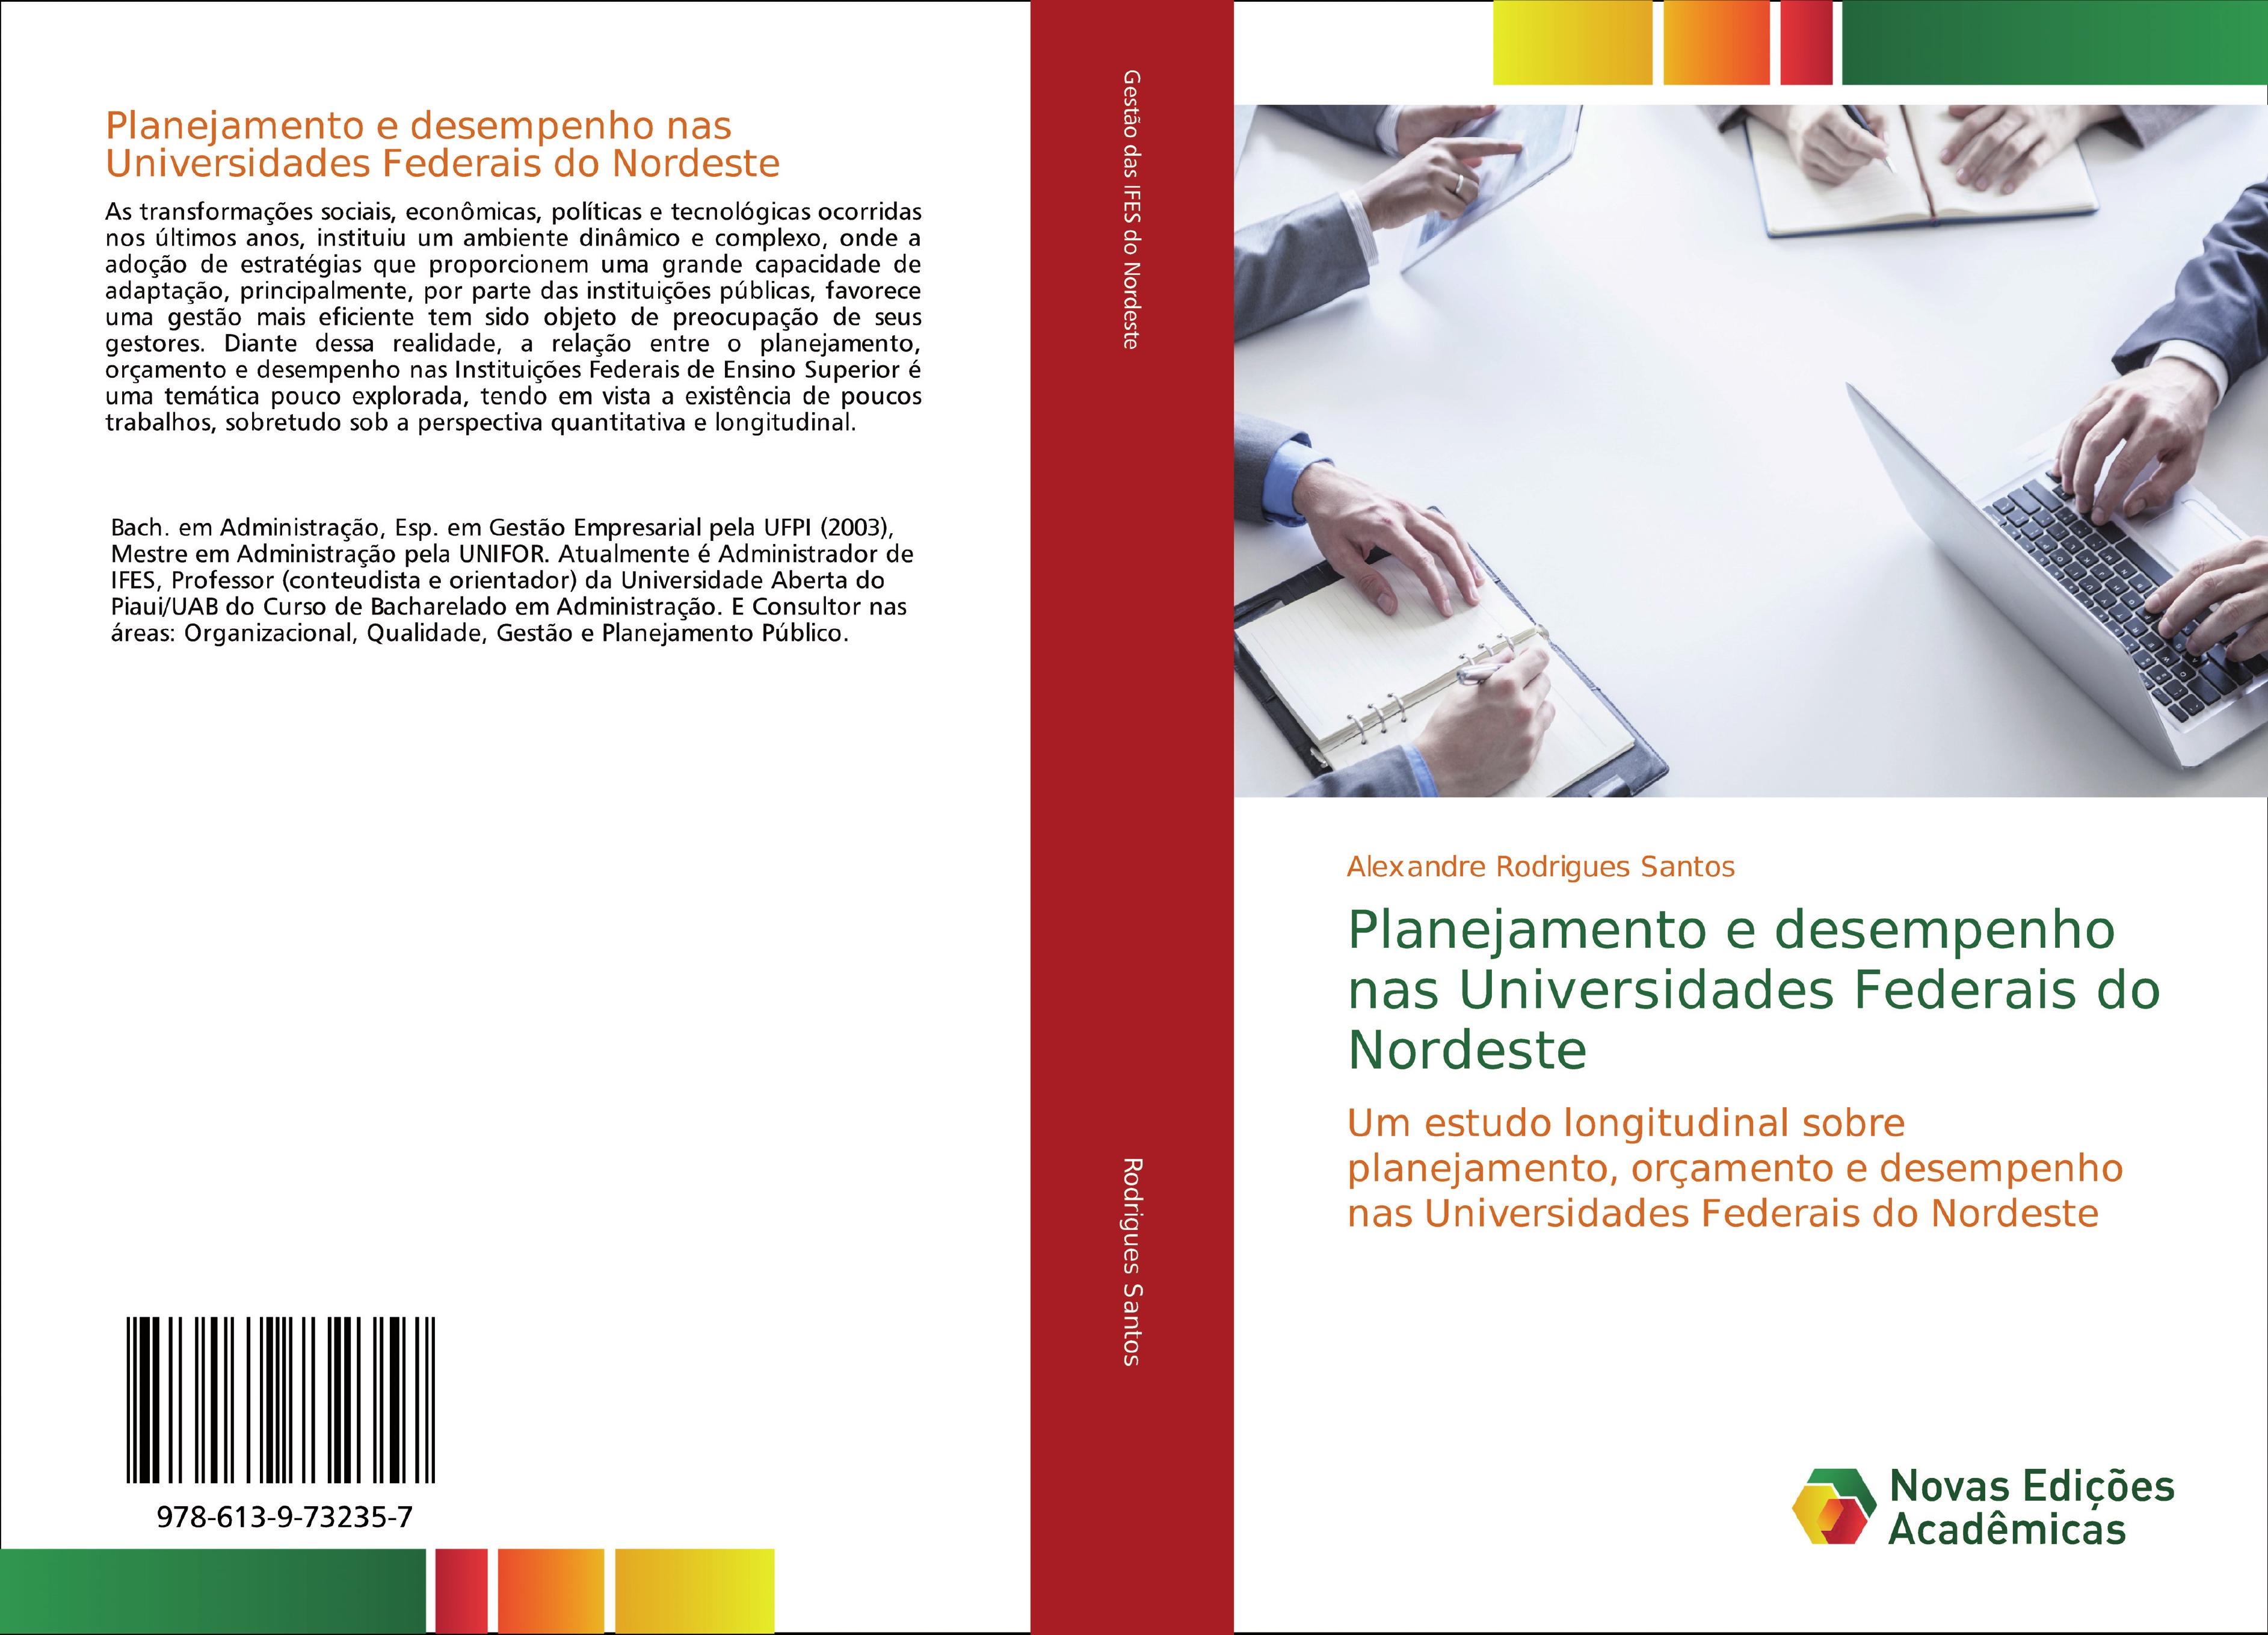 Planejamento e desempenho nas Universidades Federais do Nordeste - Alexandre Rodrigues Santos